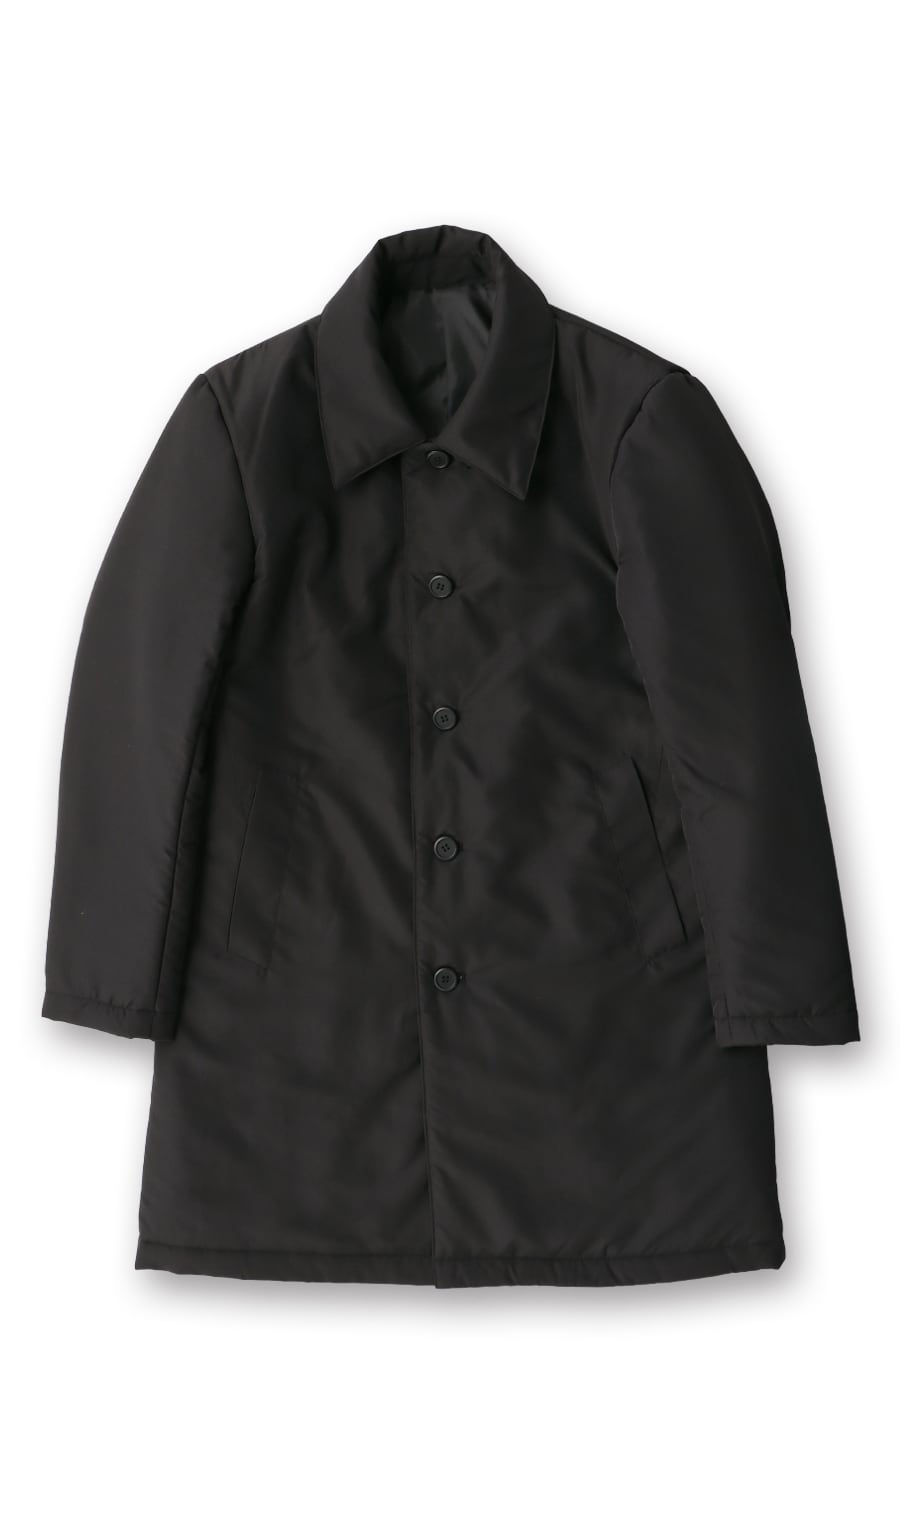 新品未使用 紳士用コート Mサイズ 70%近くオフ 紳士服コナカ - 東京都 